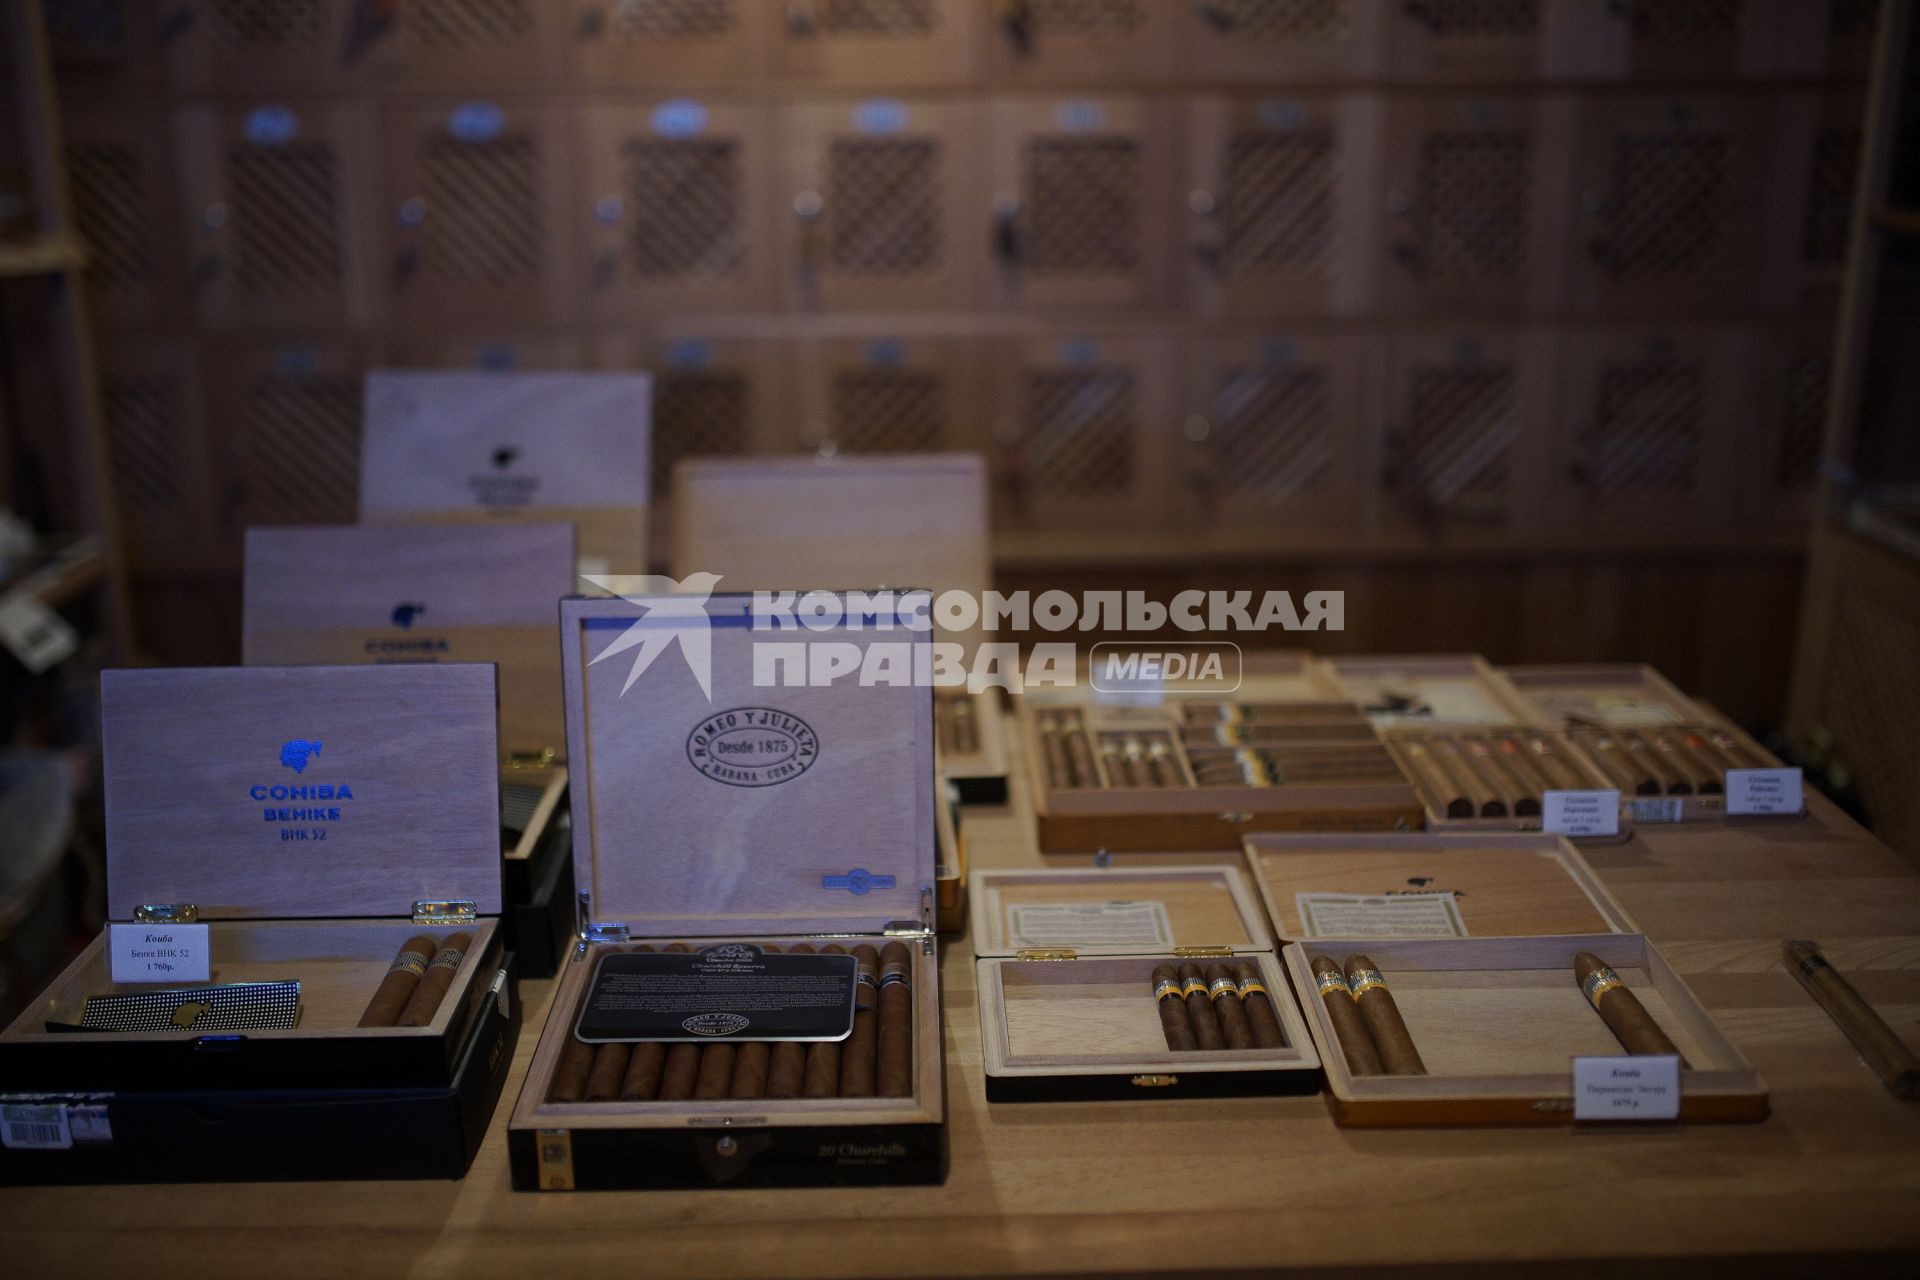 Сигары в хумидорах Уральский сигарный дом